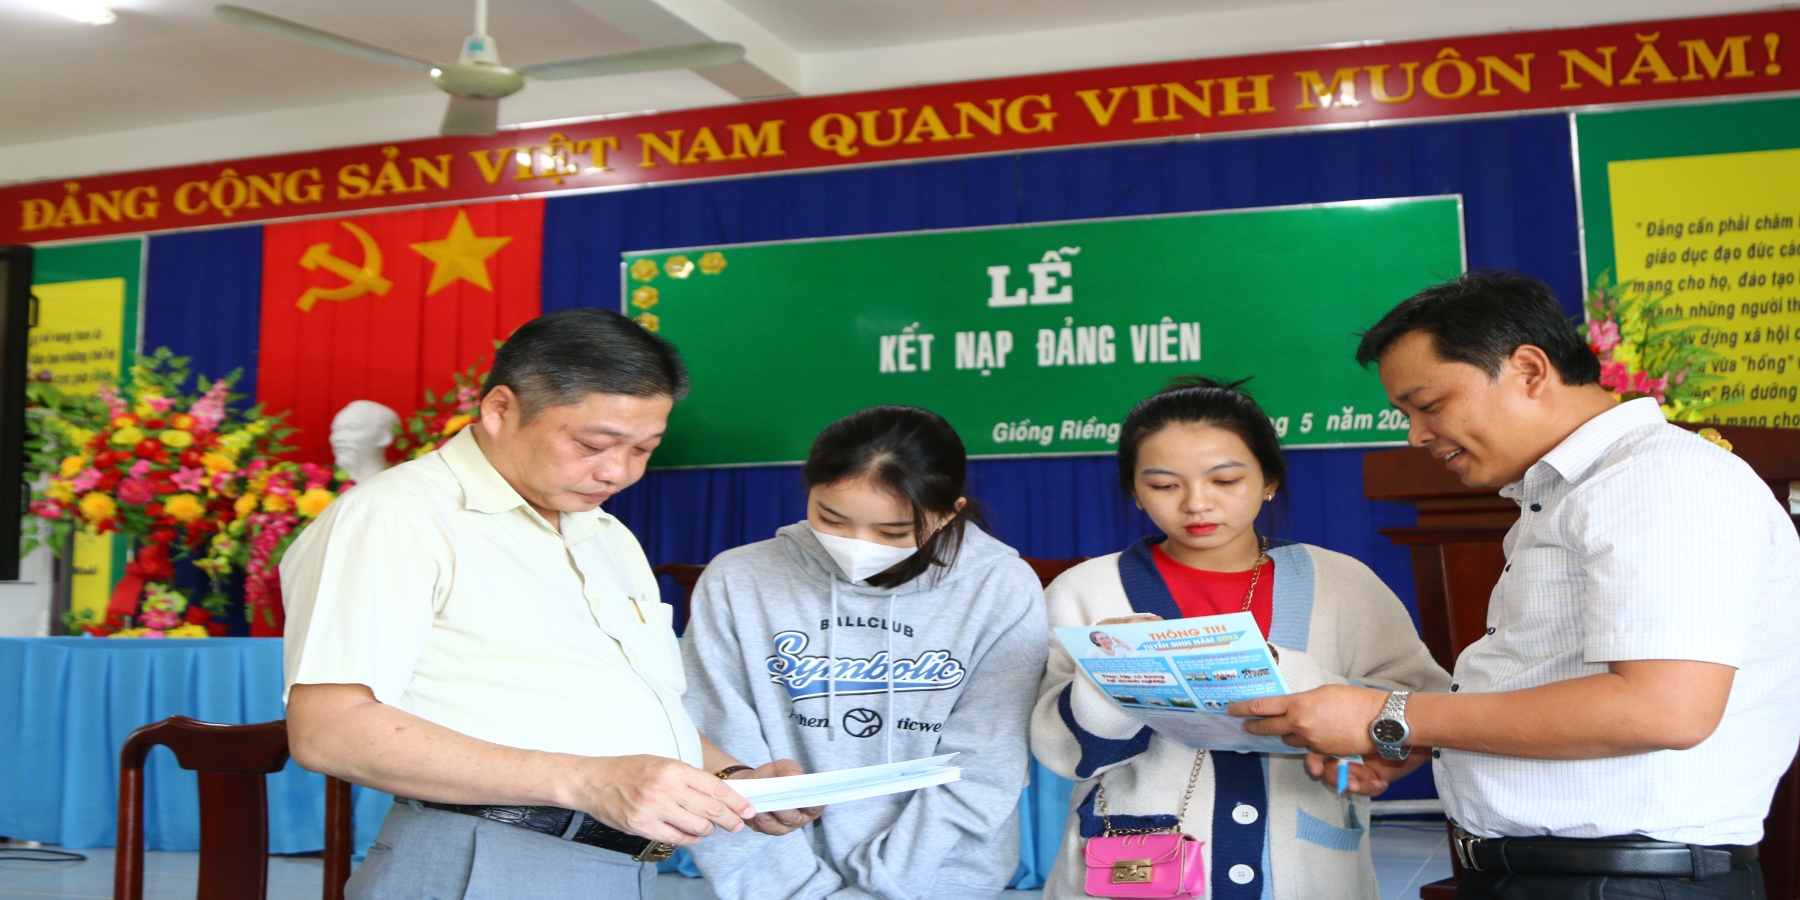 Trường Đại học Kiên Giang tổ chức gặp gỡ phụ huynh tại các Trường Trung học phổ thông